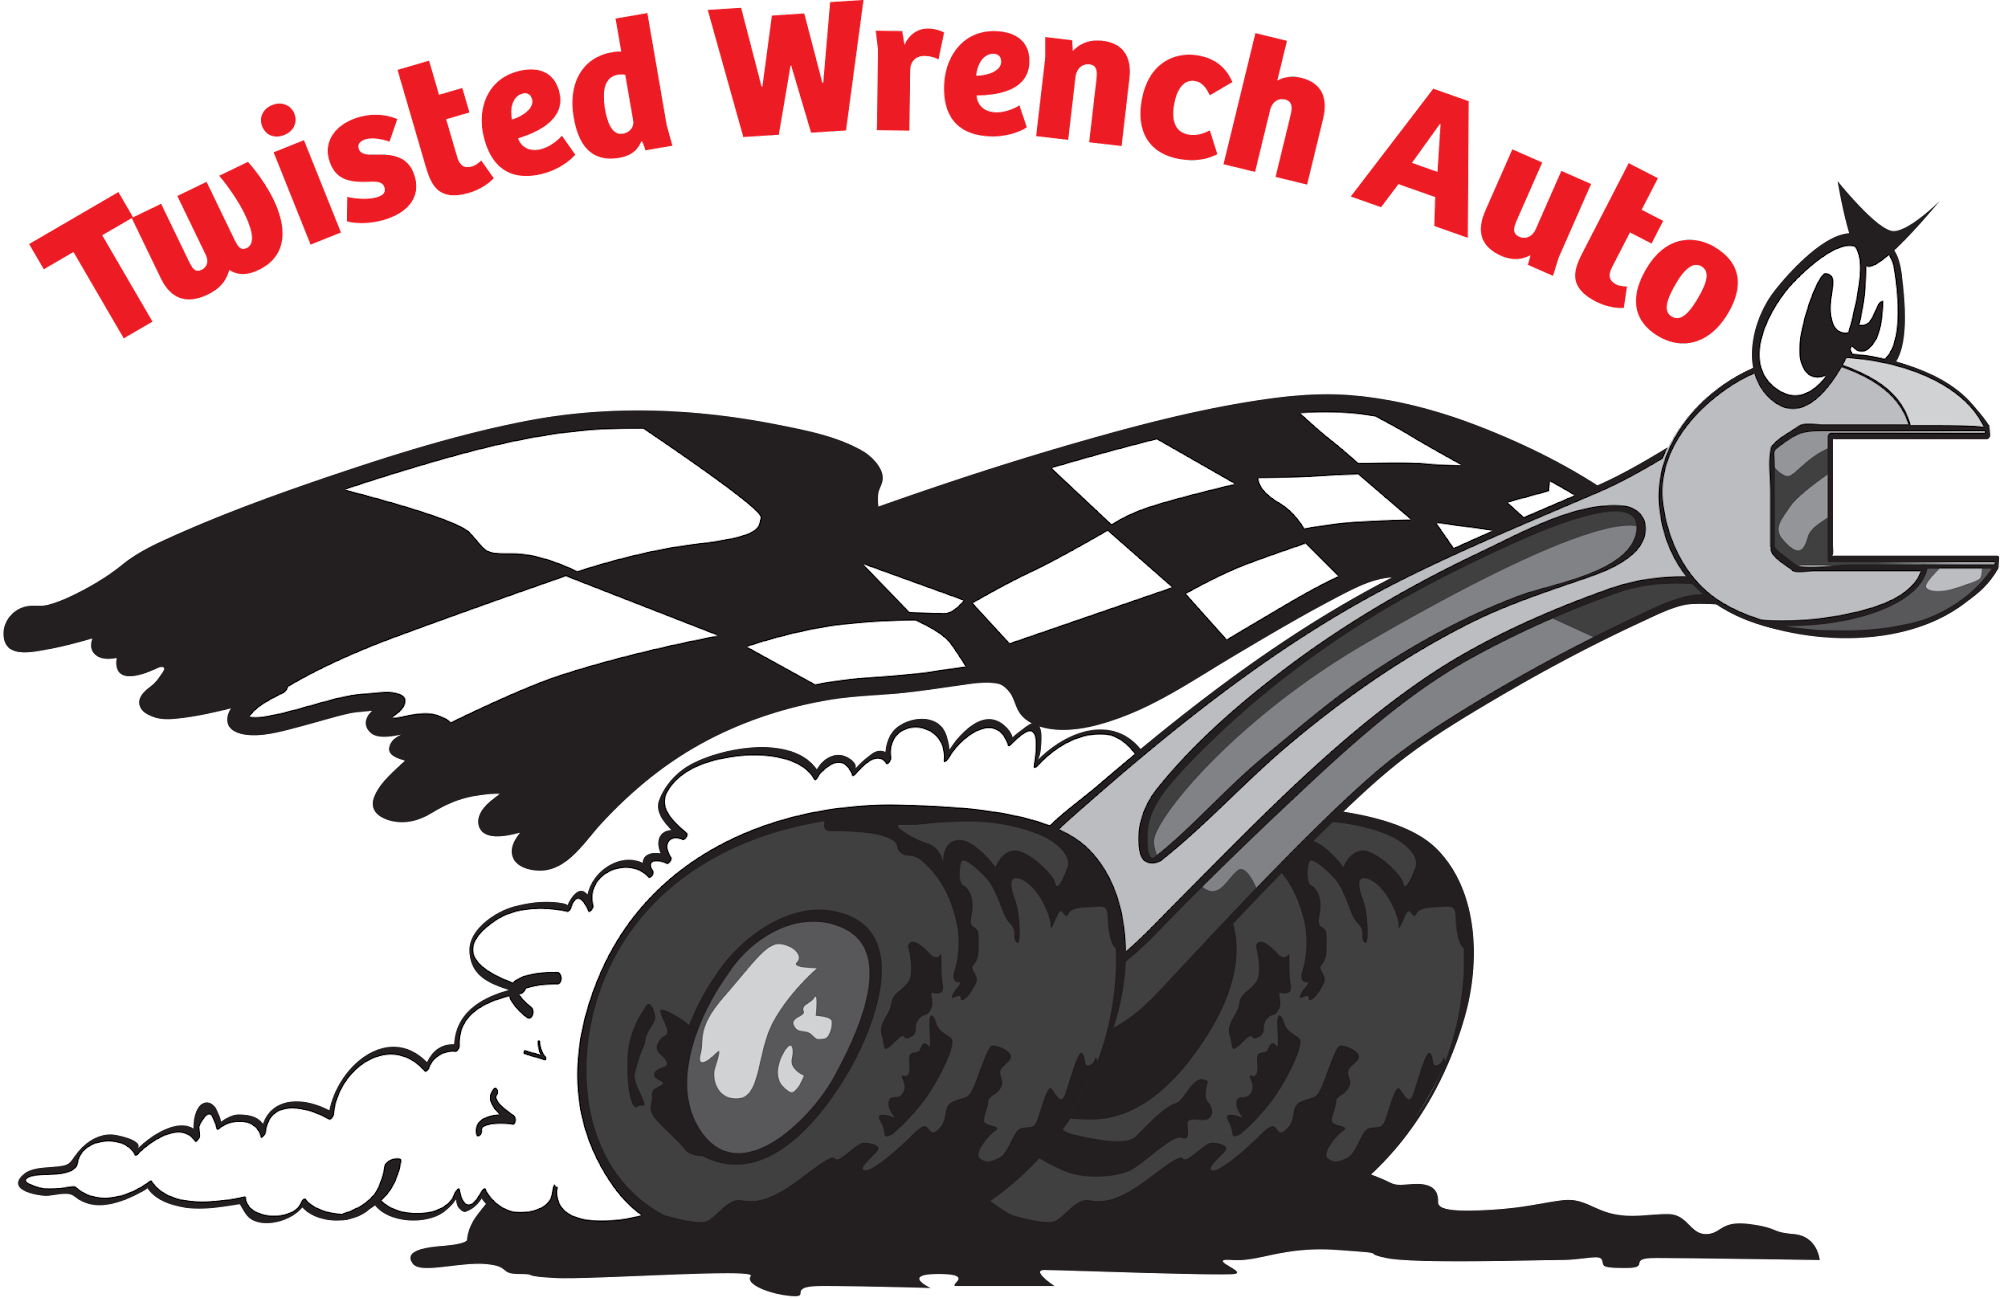 Twisted Wrench Auto 425 N 400 W #1B, North Salt Lake Utah 84054